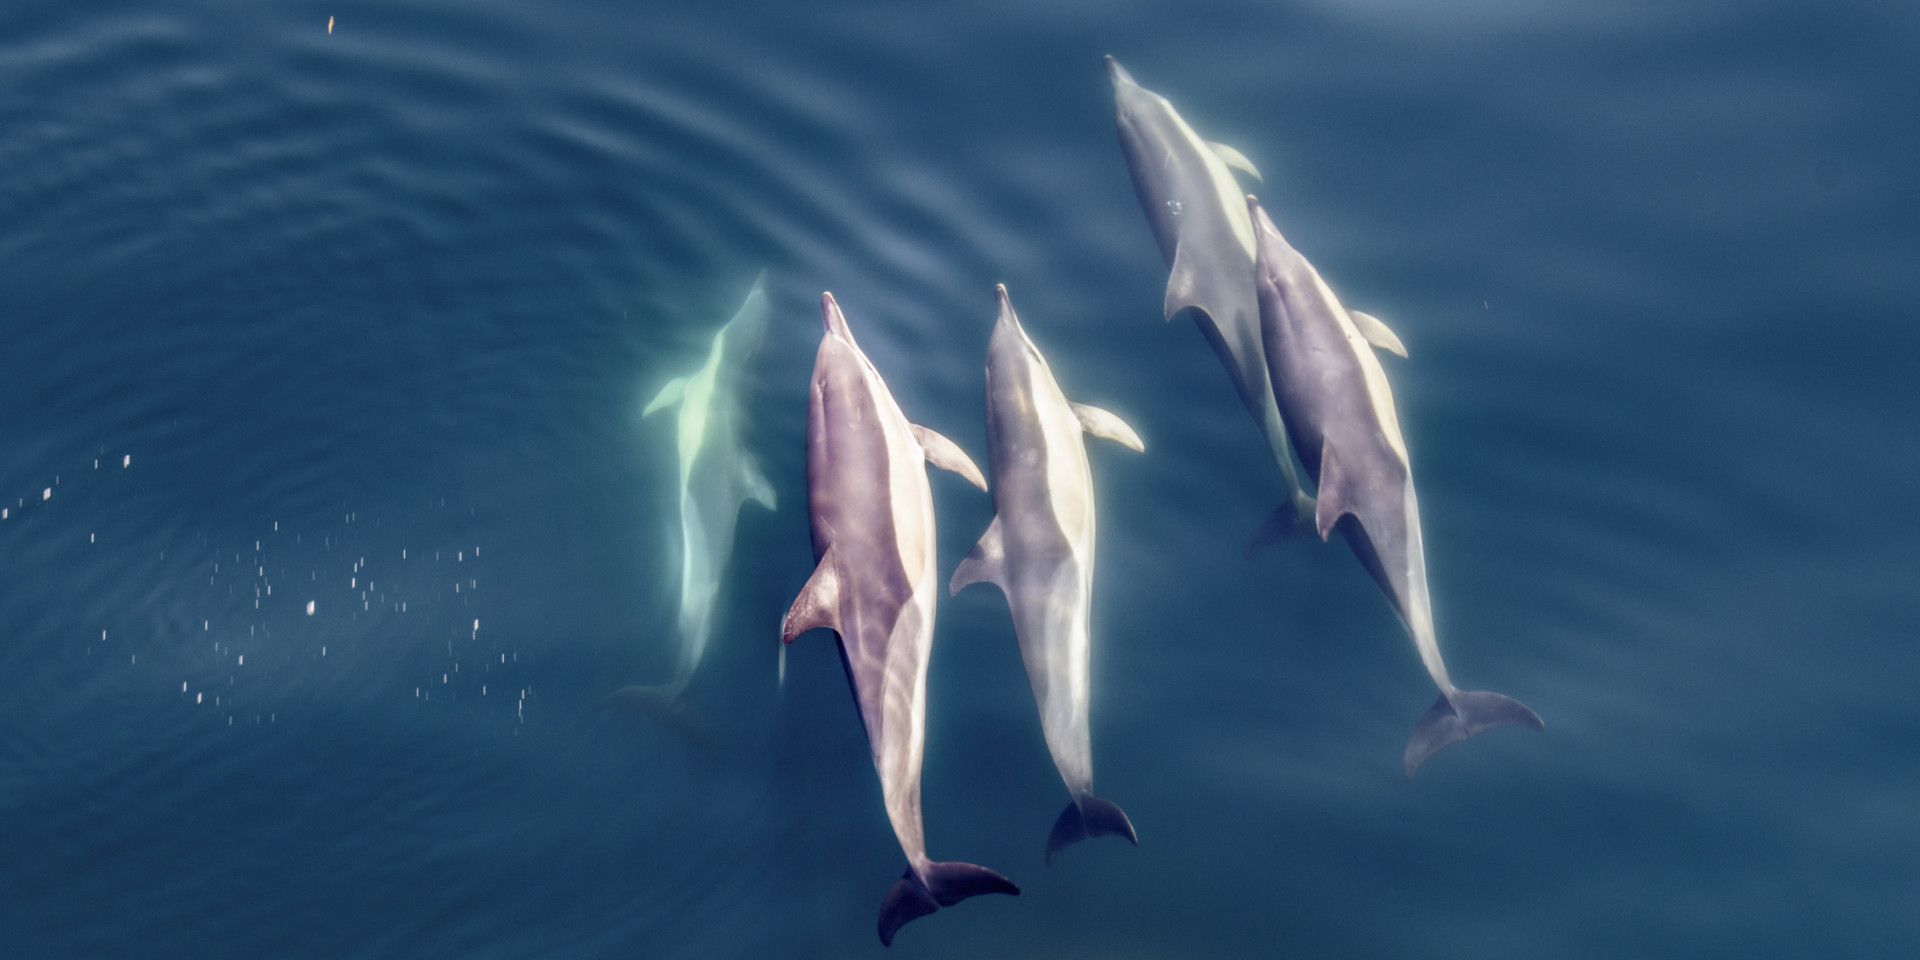 Dolfijnen in de zee